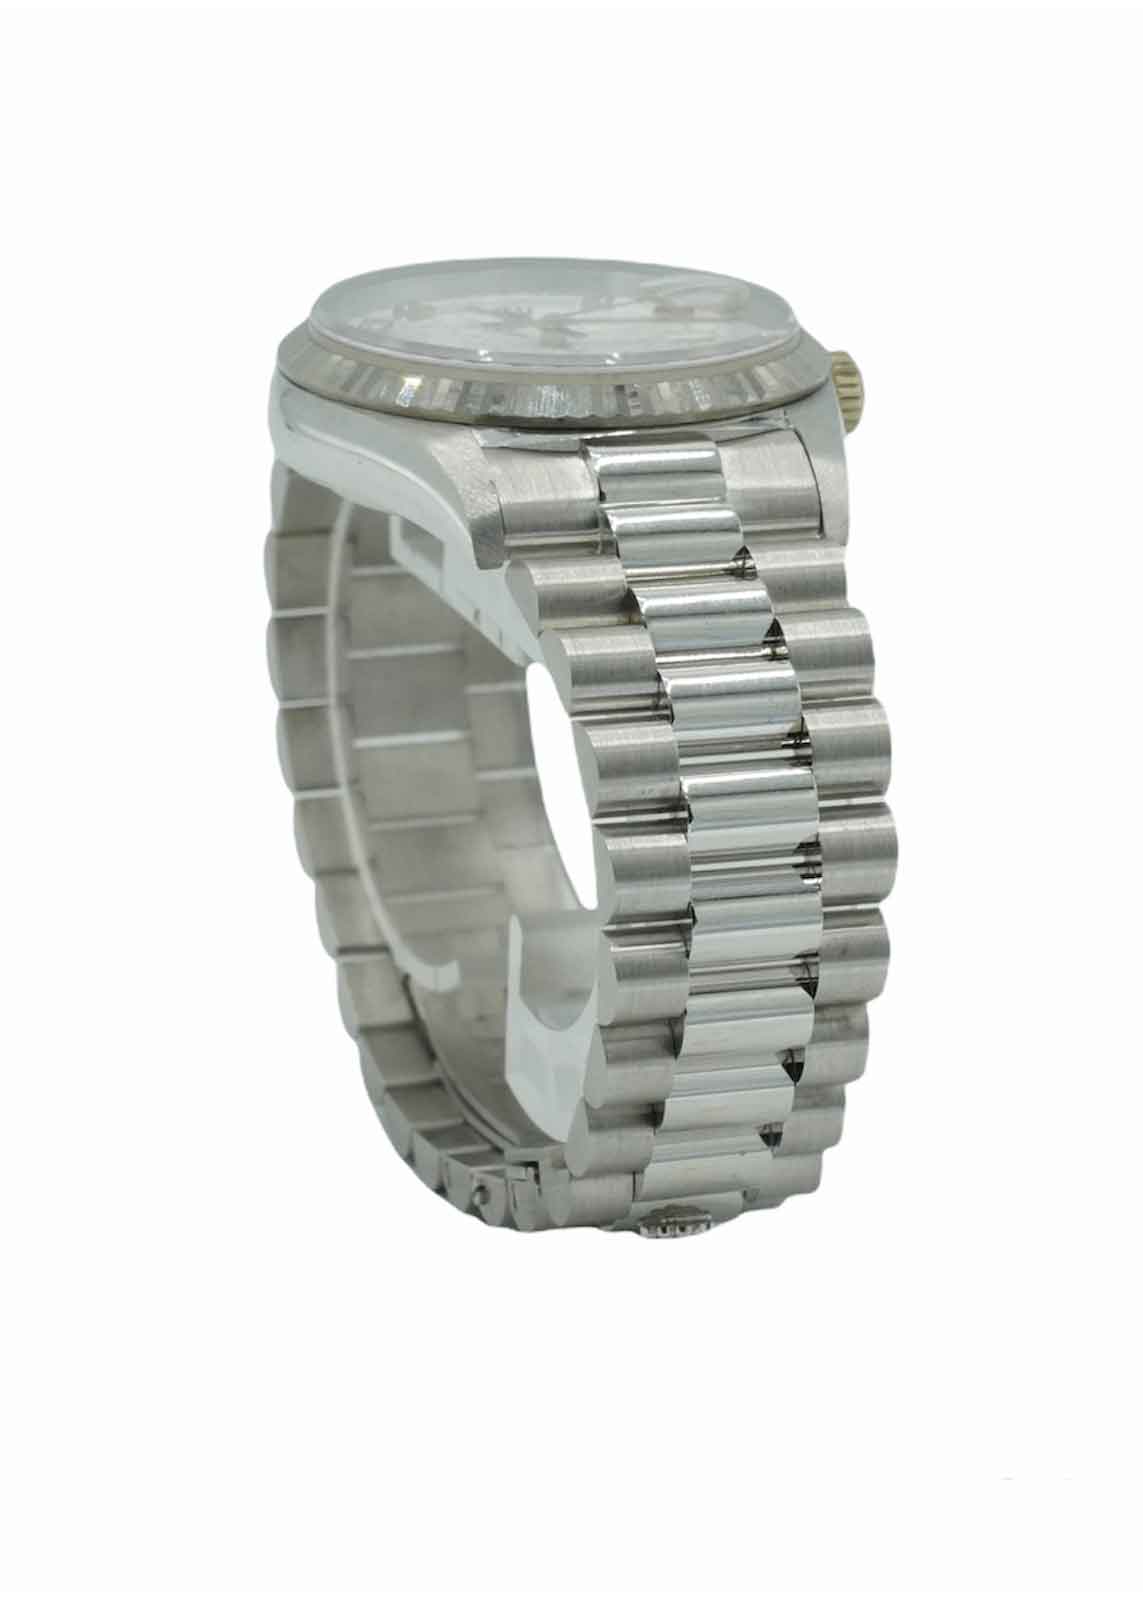 Rolex DayDate 36mm Watch 18239 Factory Diamond Dial